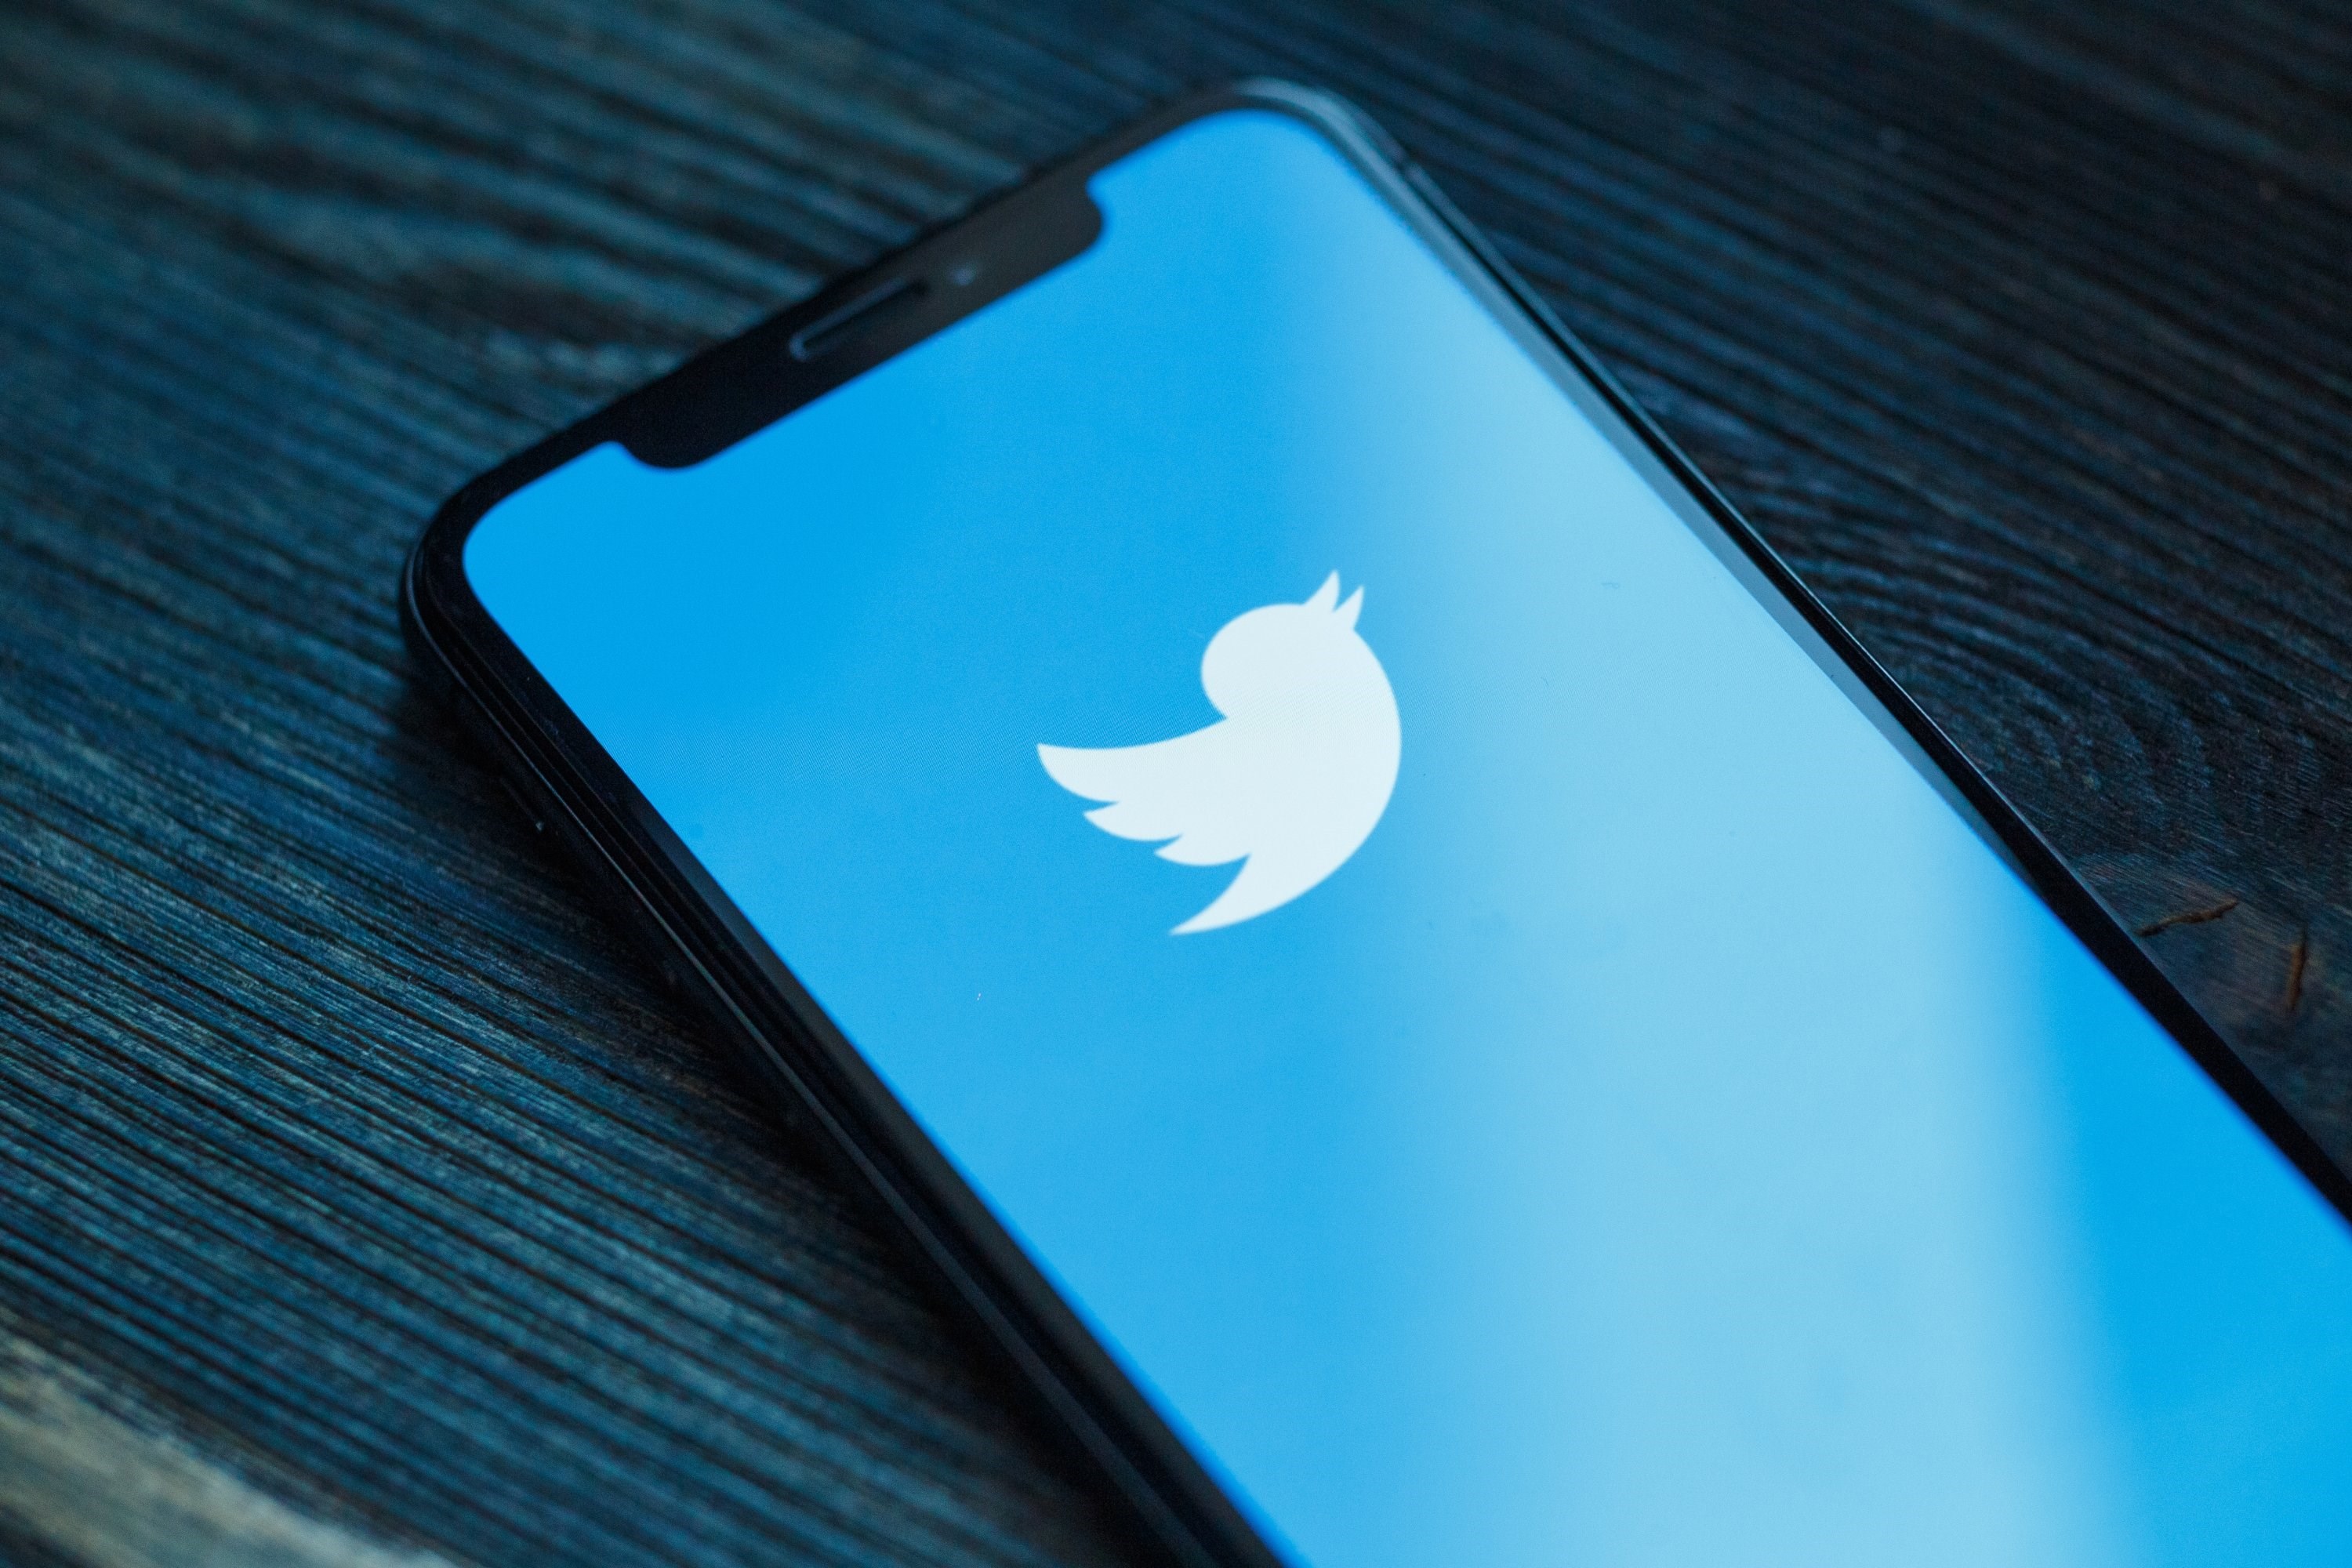 Türkiye içeriklerini engelleyen Twitter’dan kritik açıklama